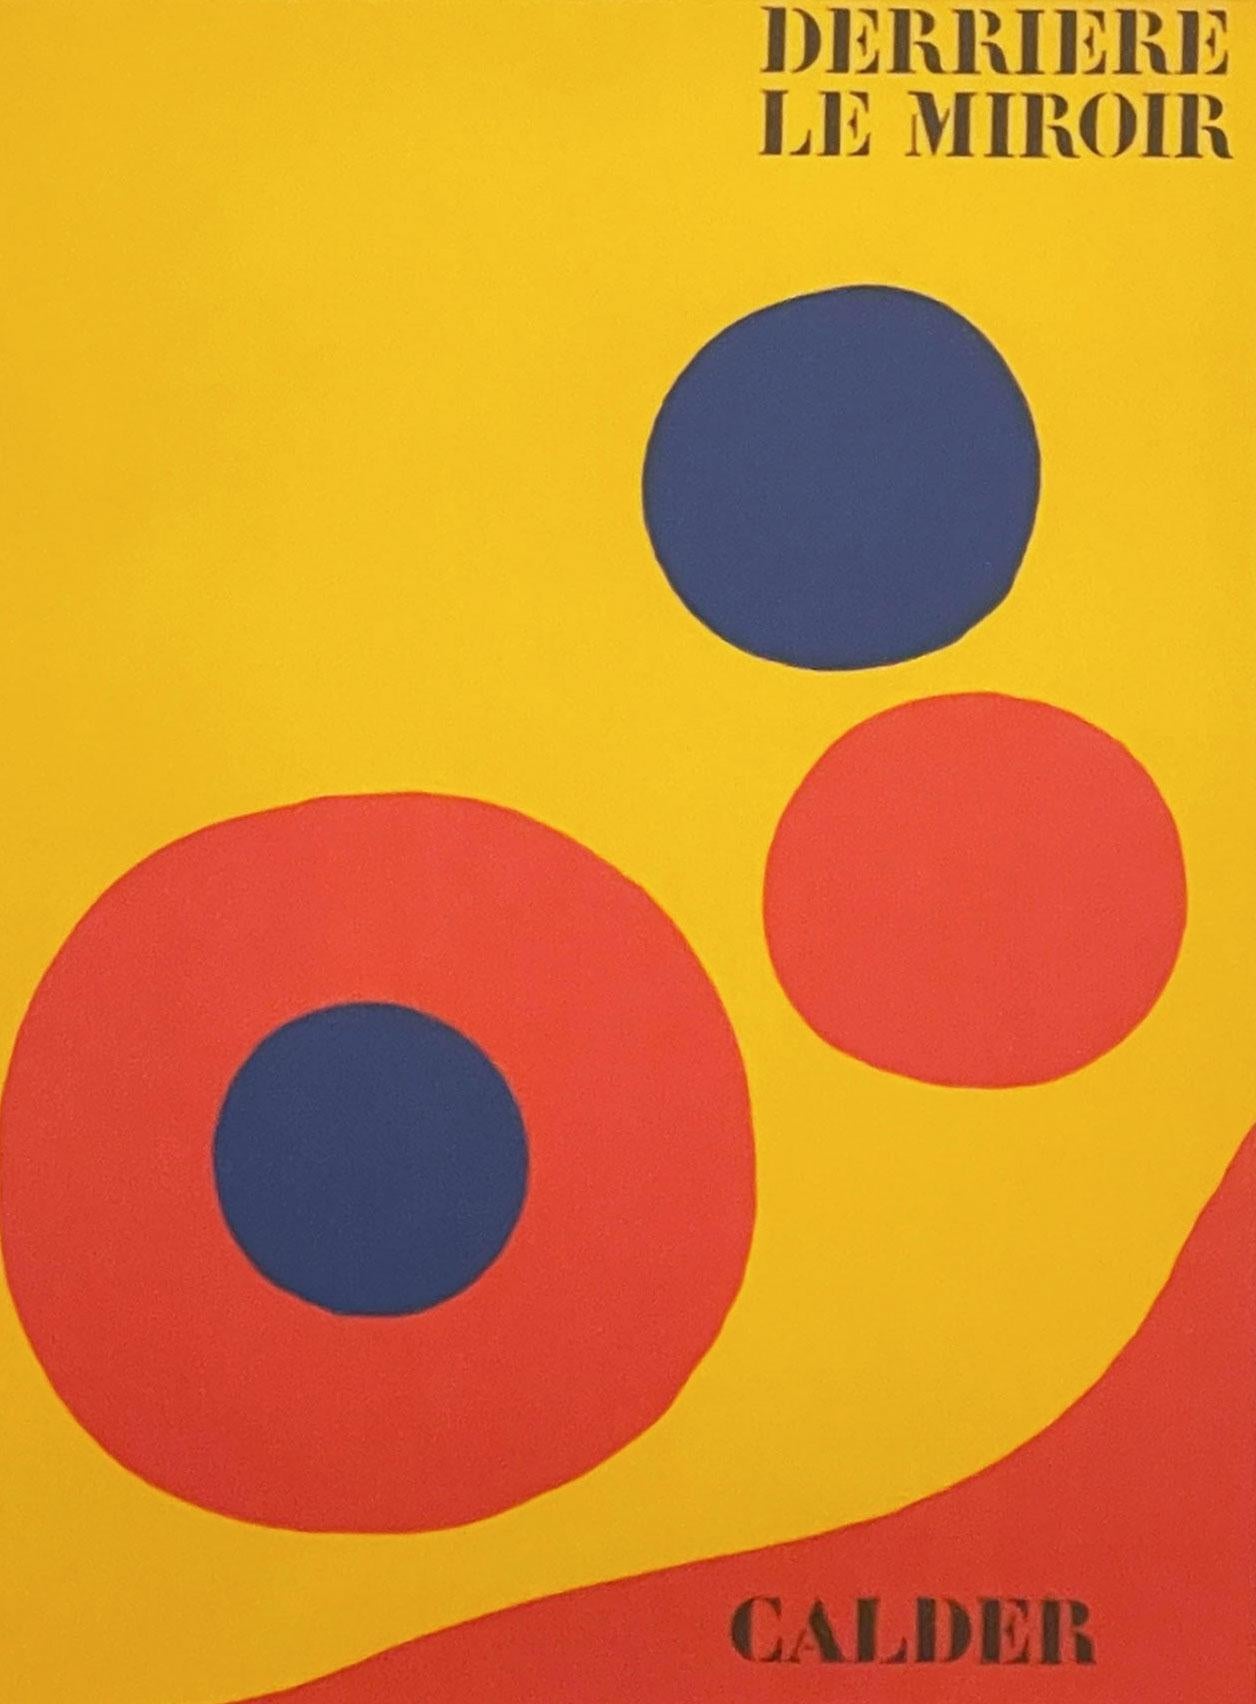 Cover, Derriere le Miroir #201 - Print by Alexander Calder